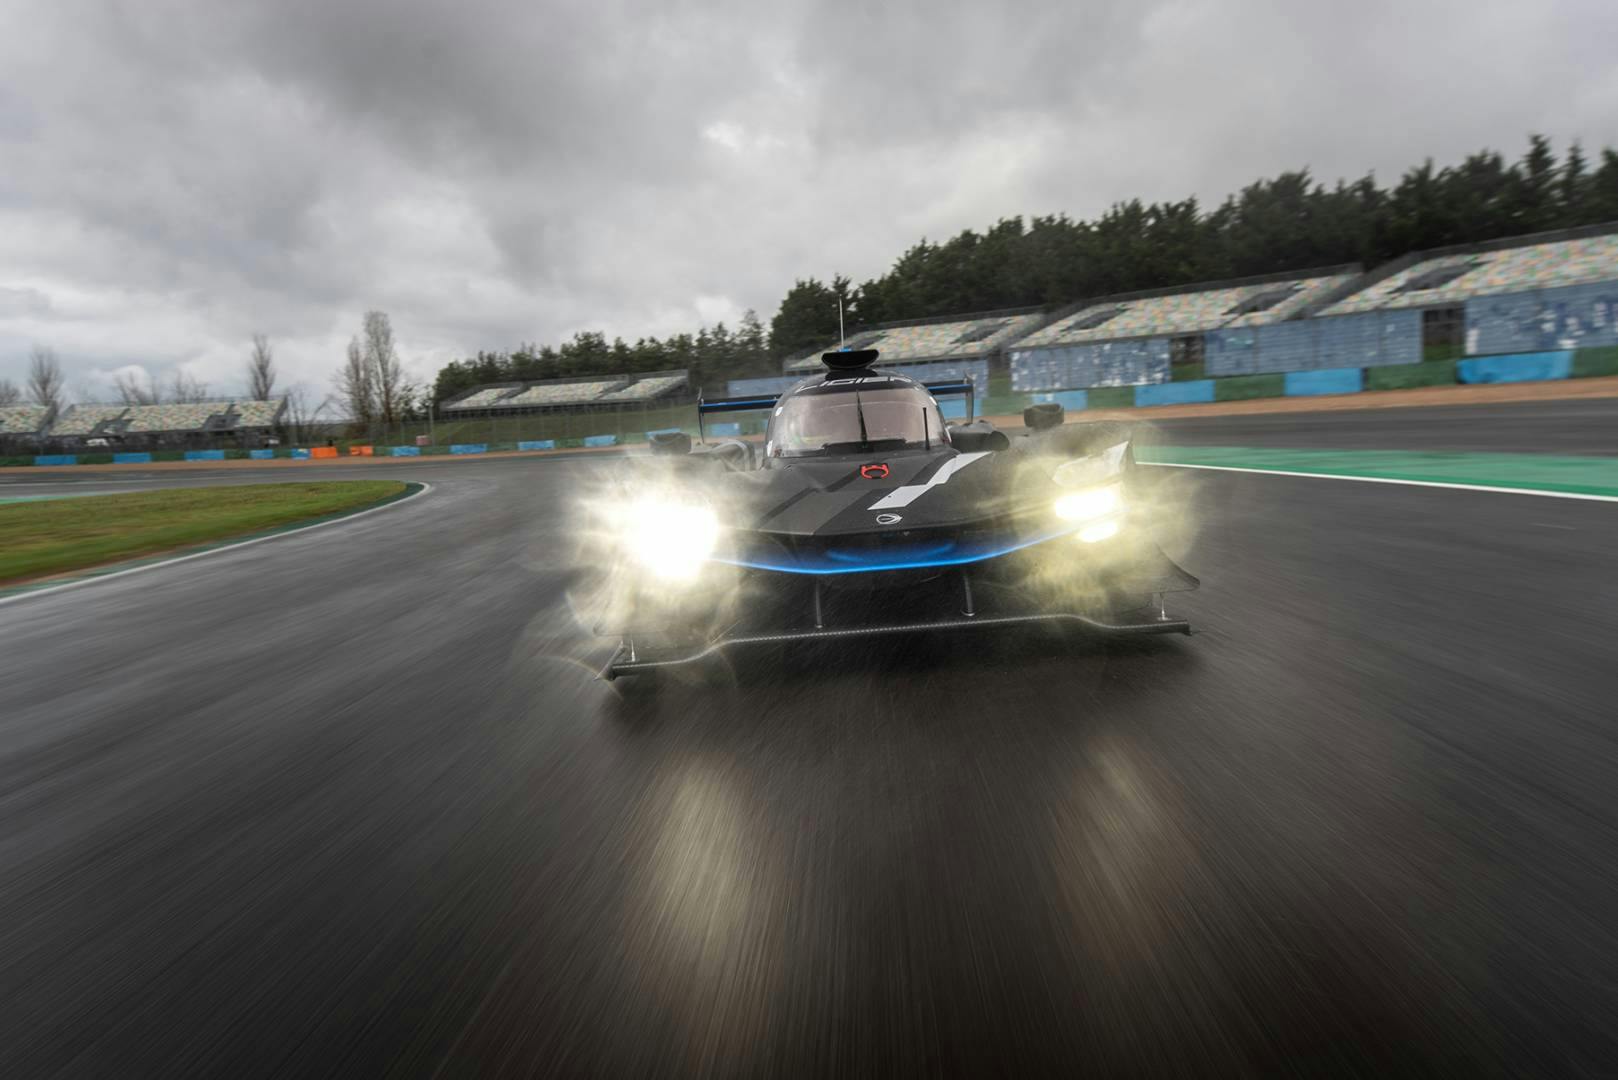 Ligier JS PX track special